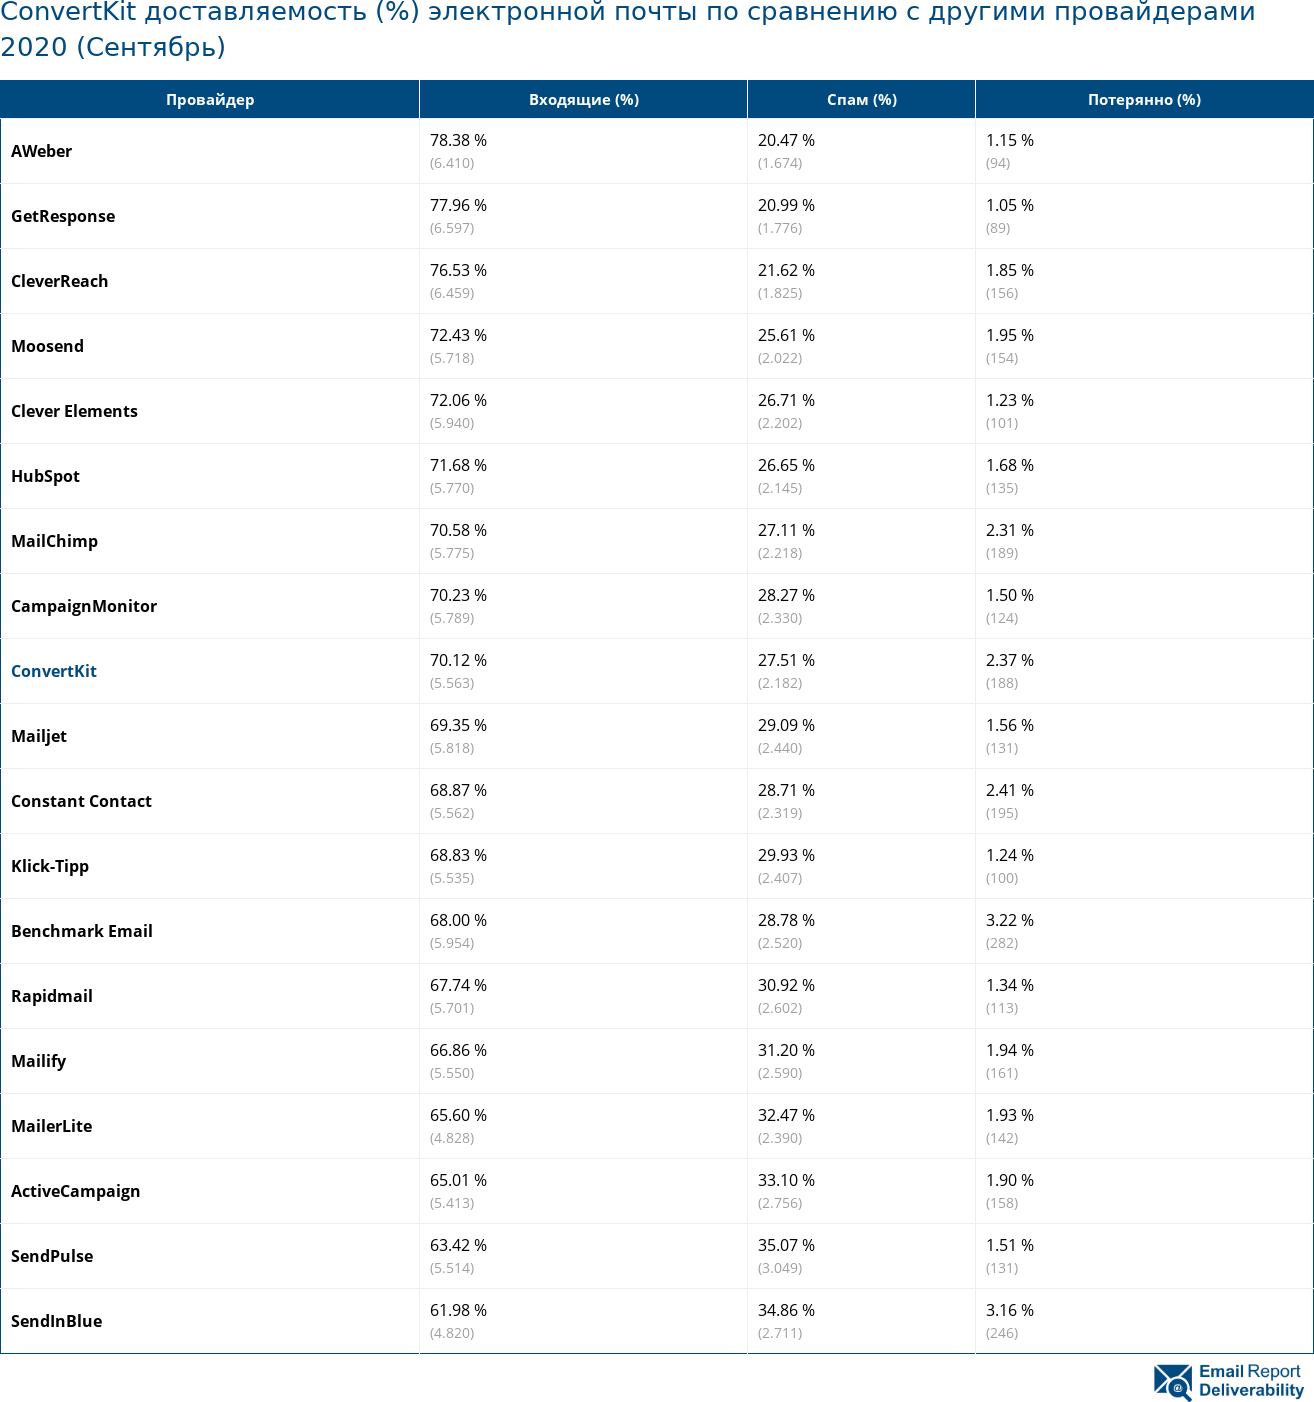 ConvertKit доставляемость (%) электронной почты по сравнению с другими провайдерами 2020 (Сентябрь)